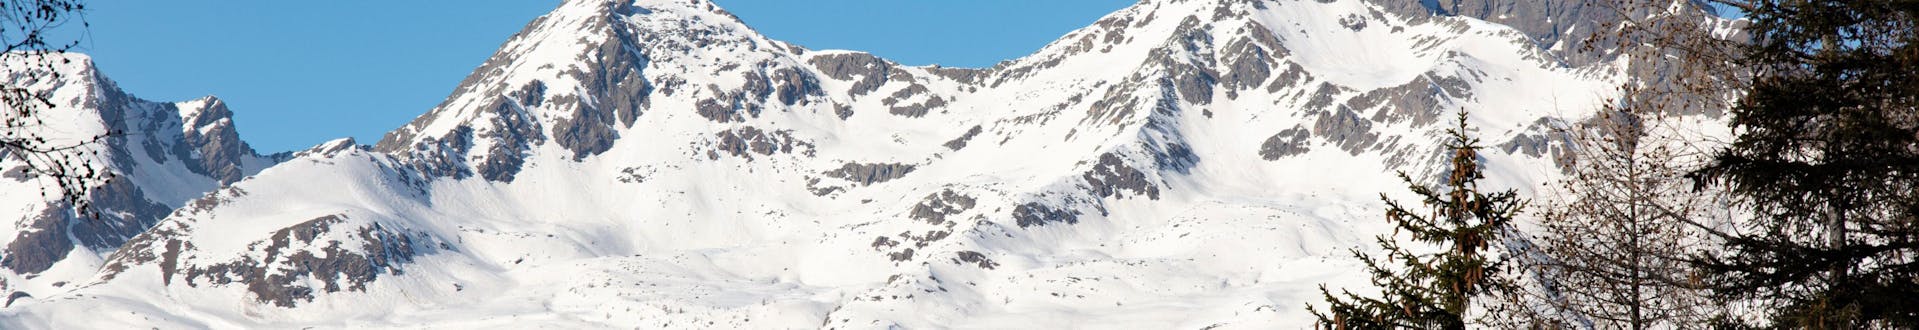 Winterlandschaft in der Nähe von Daolasa - Commezzadura, wo Sie Skikurse buchen können.